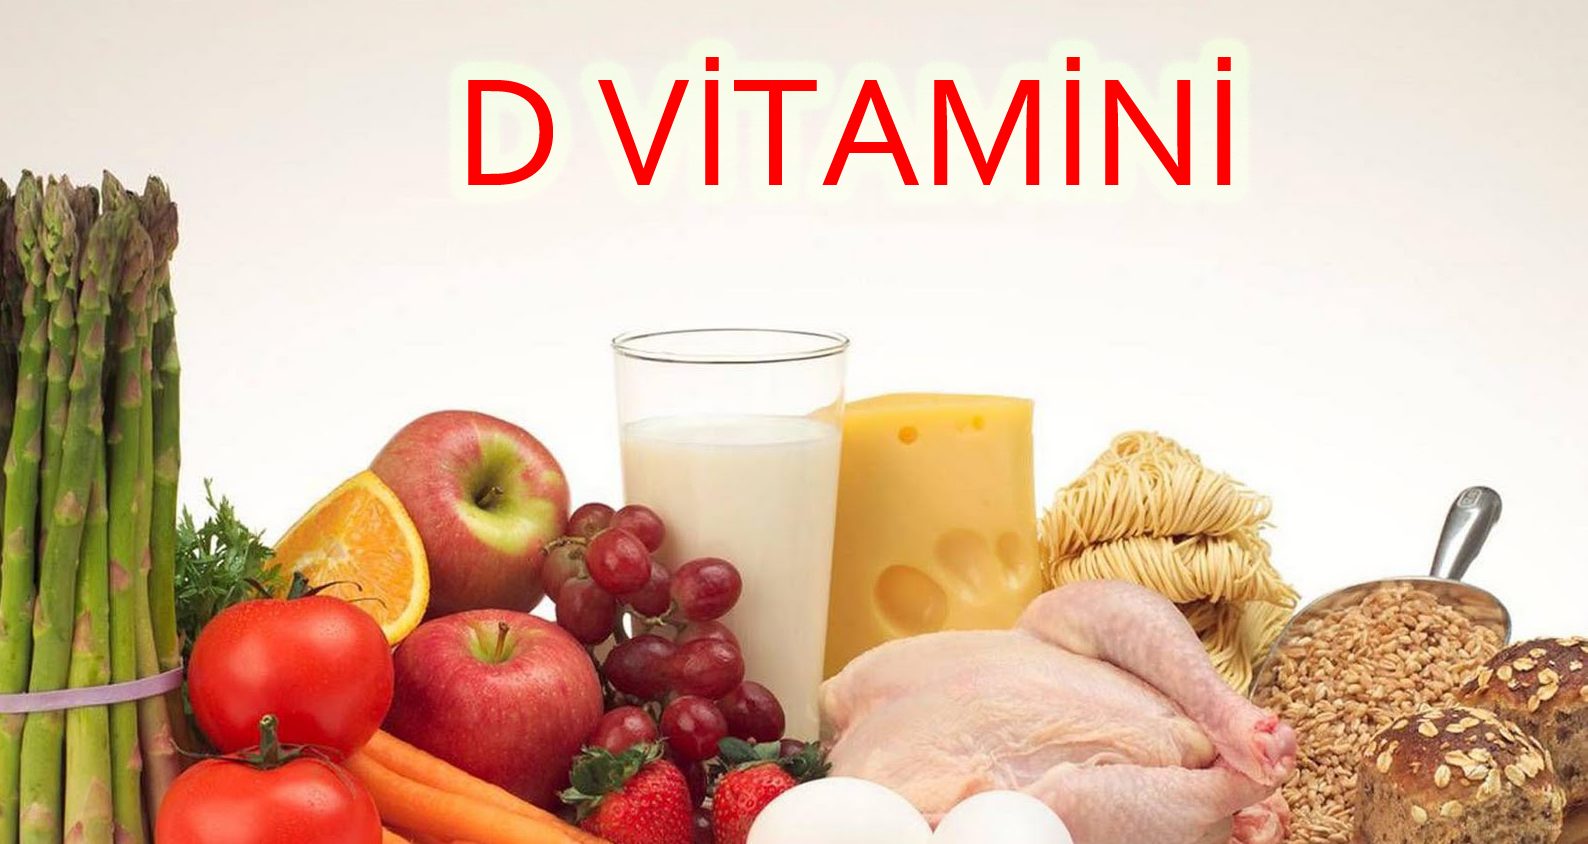  D vitamini çatışmazlığı bu ağrılara səbəb olur -<span style="color:red;"> AÇIQLAMA 